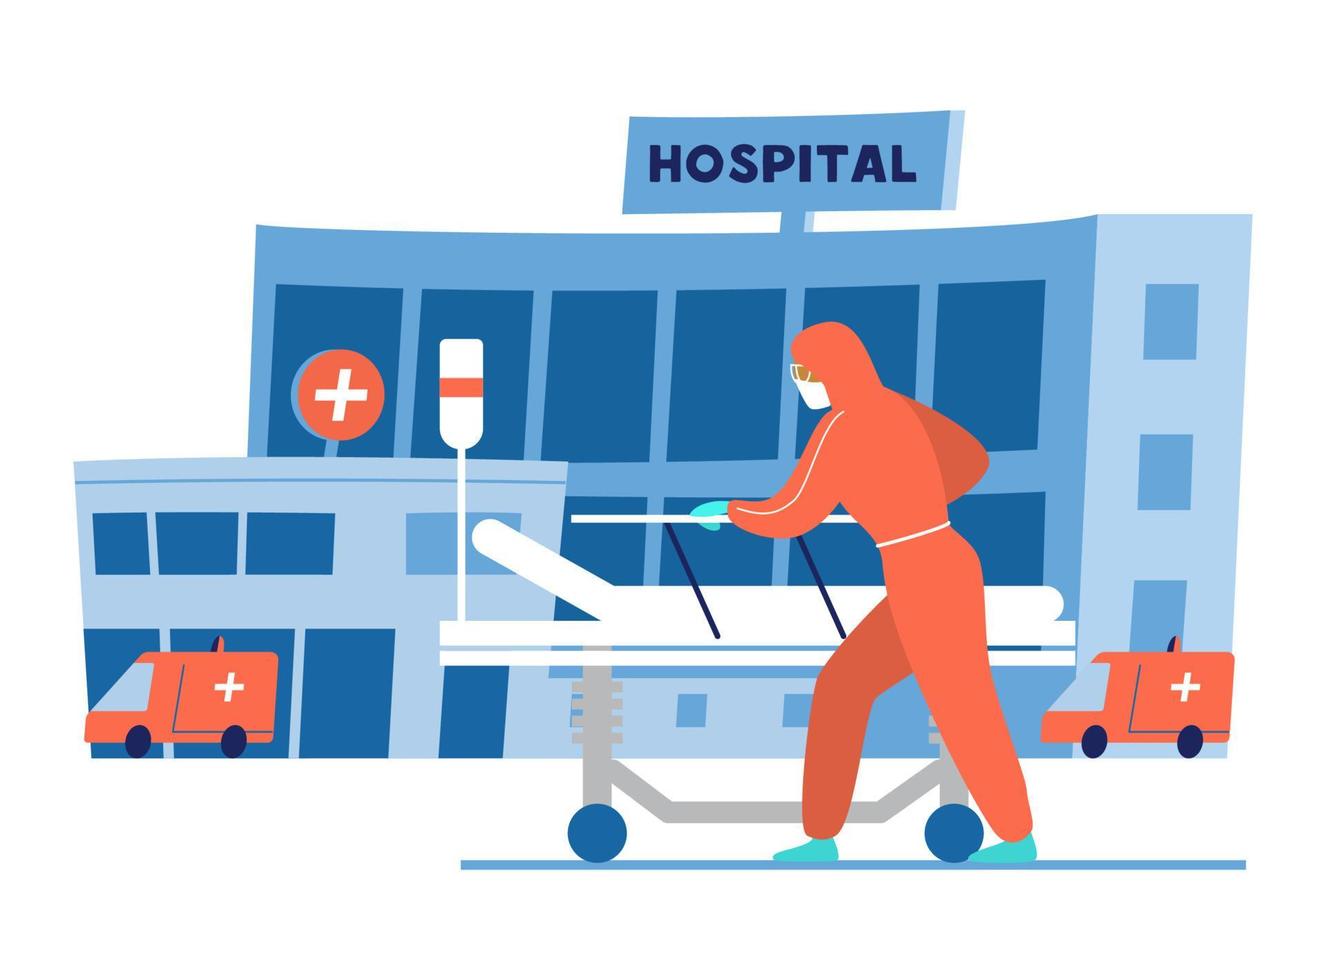 dokter in beschermend kleding met leeg medisch bed in voorkant van ziekenhuis gebouw. vlak vector illustratie.